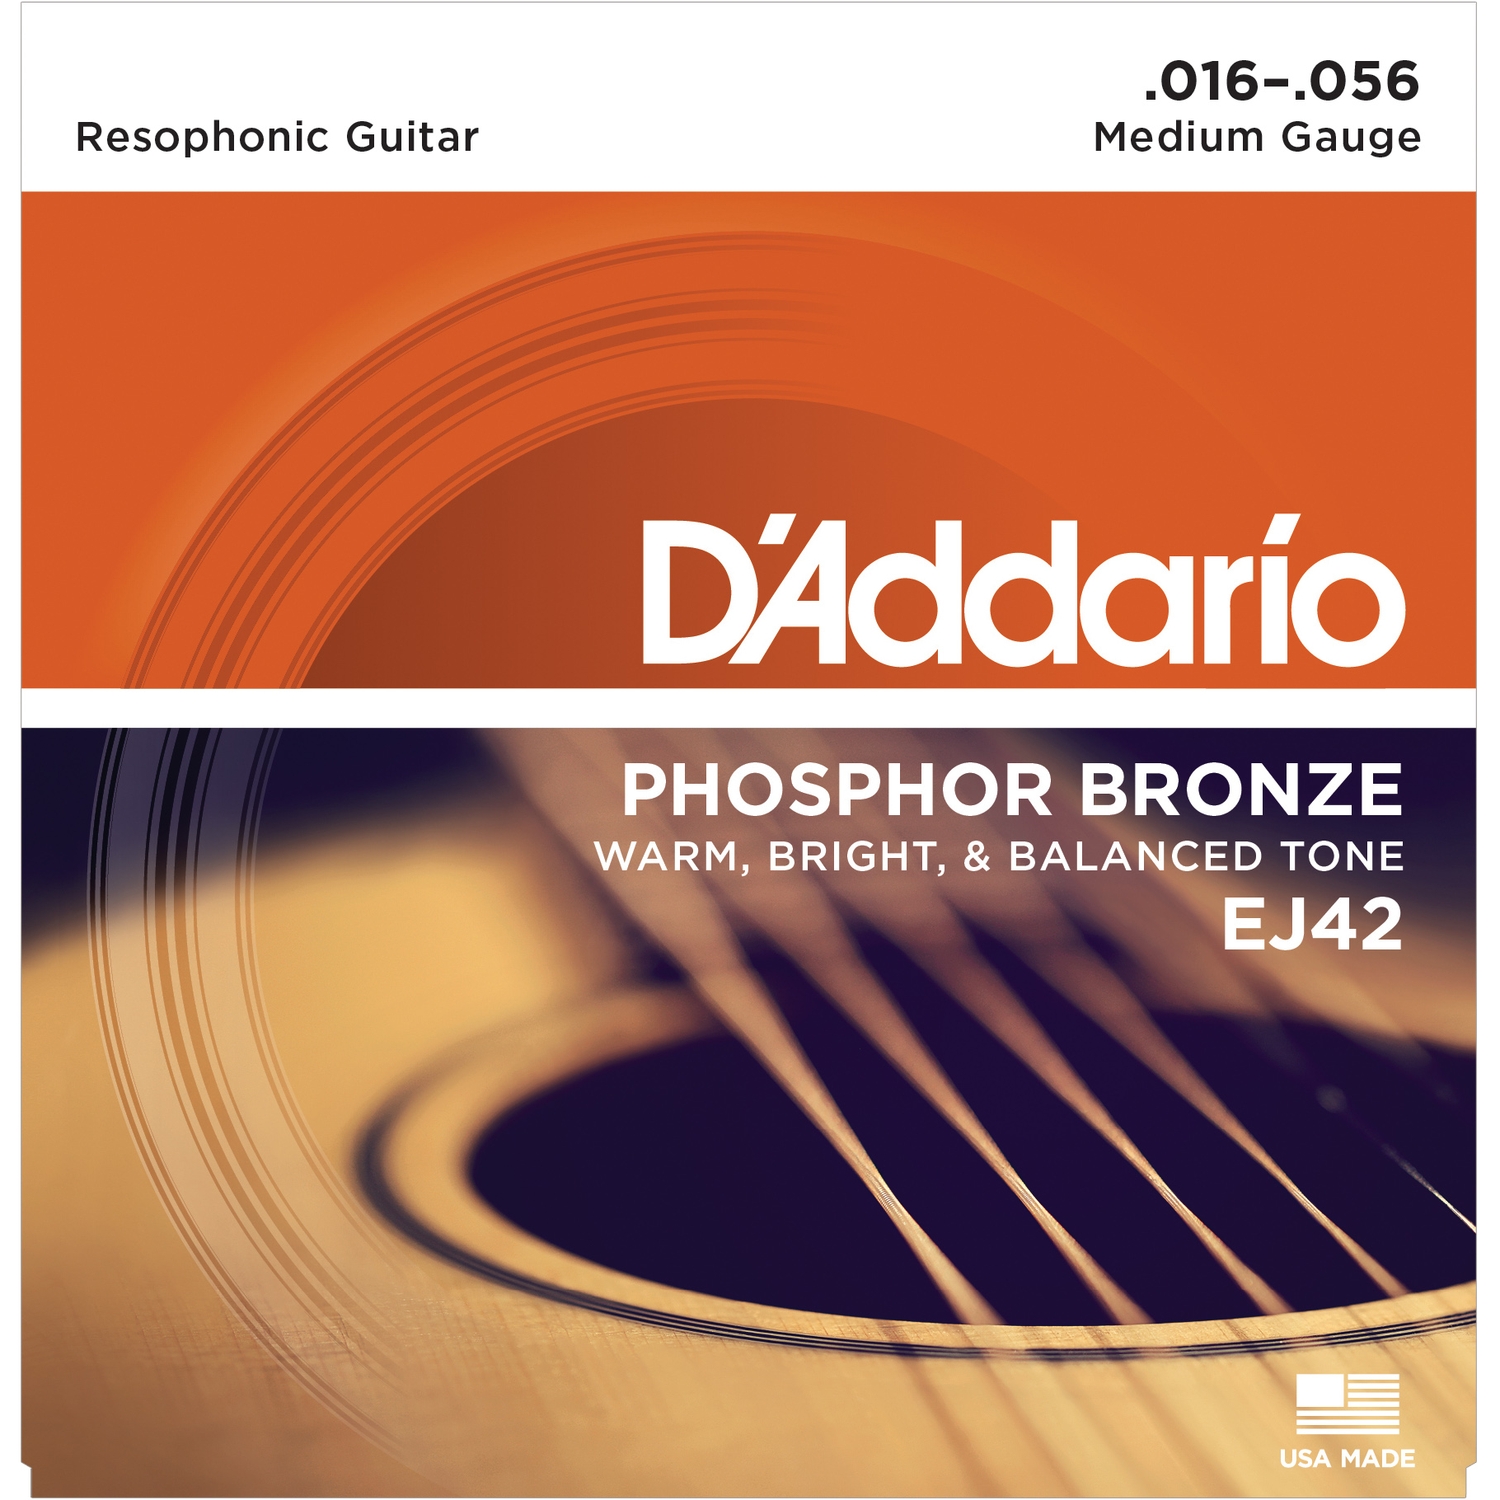 D'ADDARIO EJ42 - струны для акустической гитары,фосфор/бронза, для резонаторной (добро) гитары,16-56